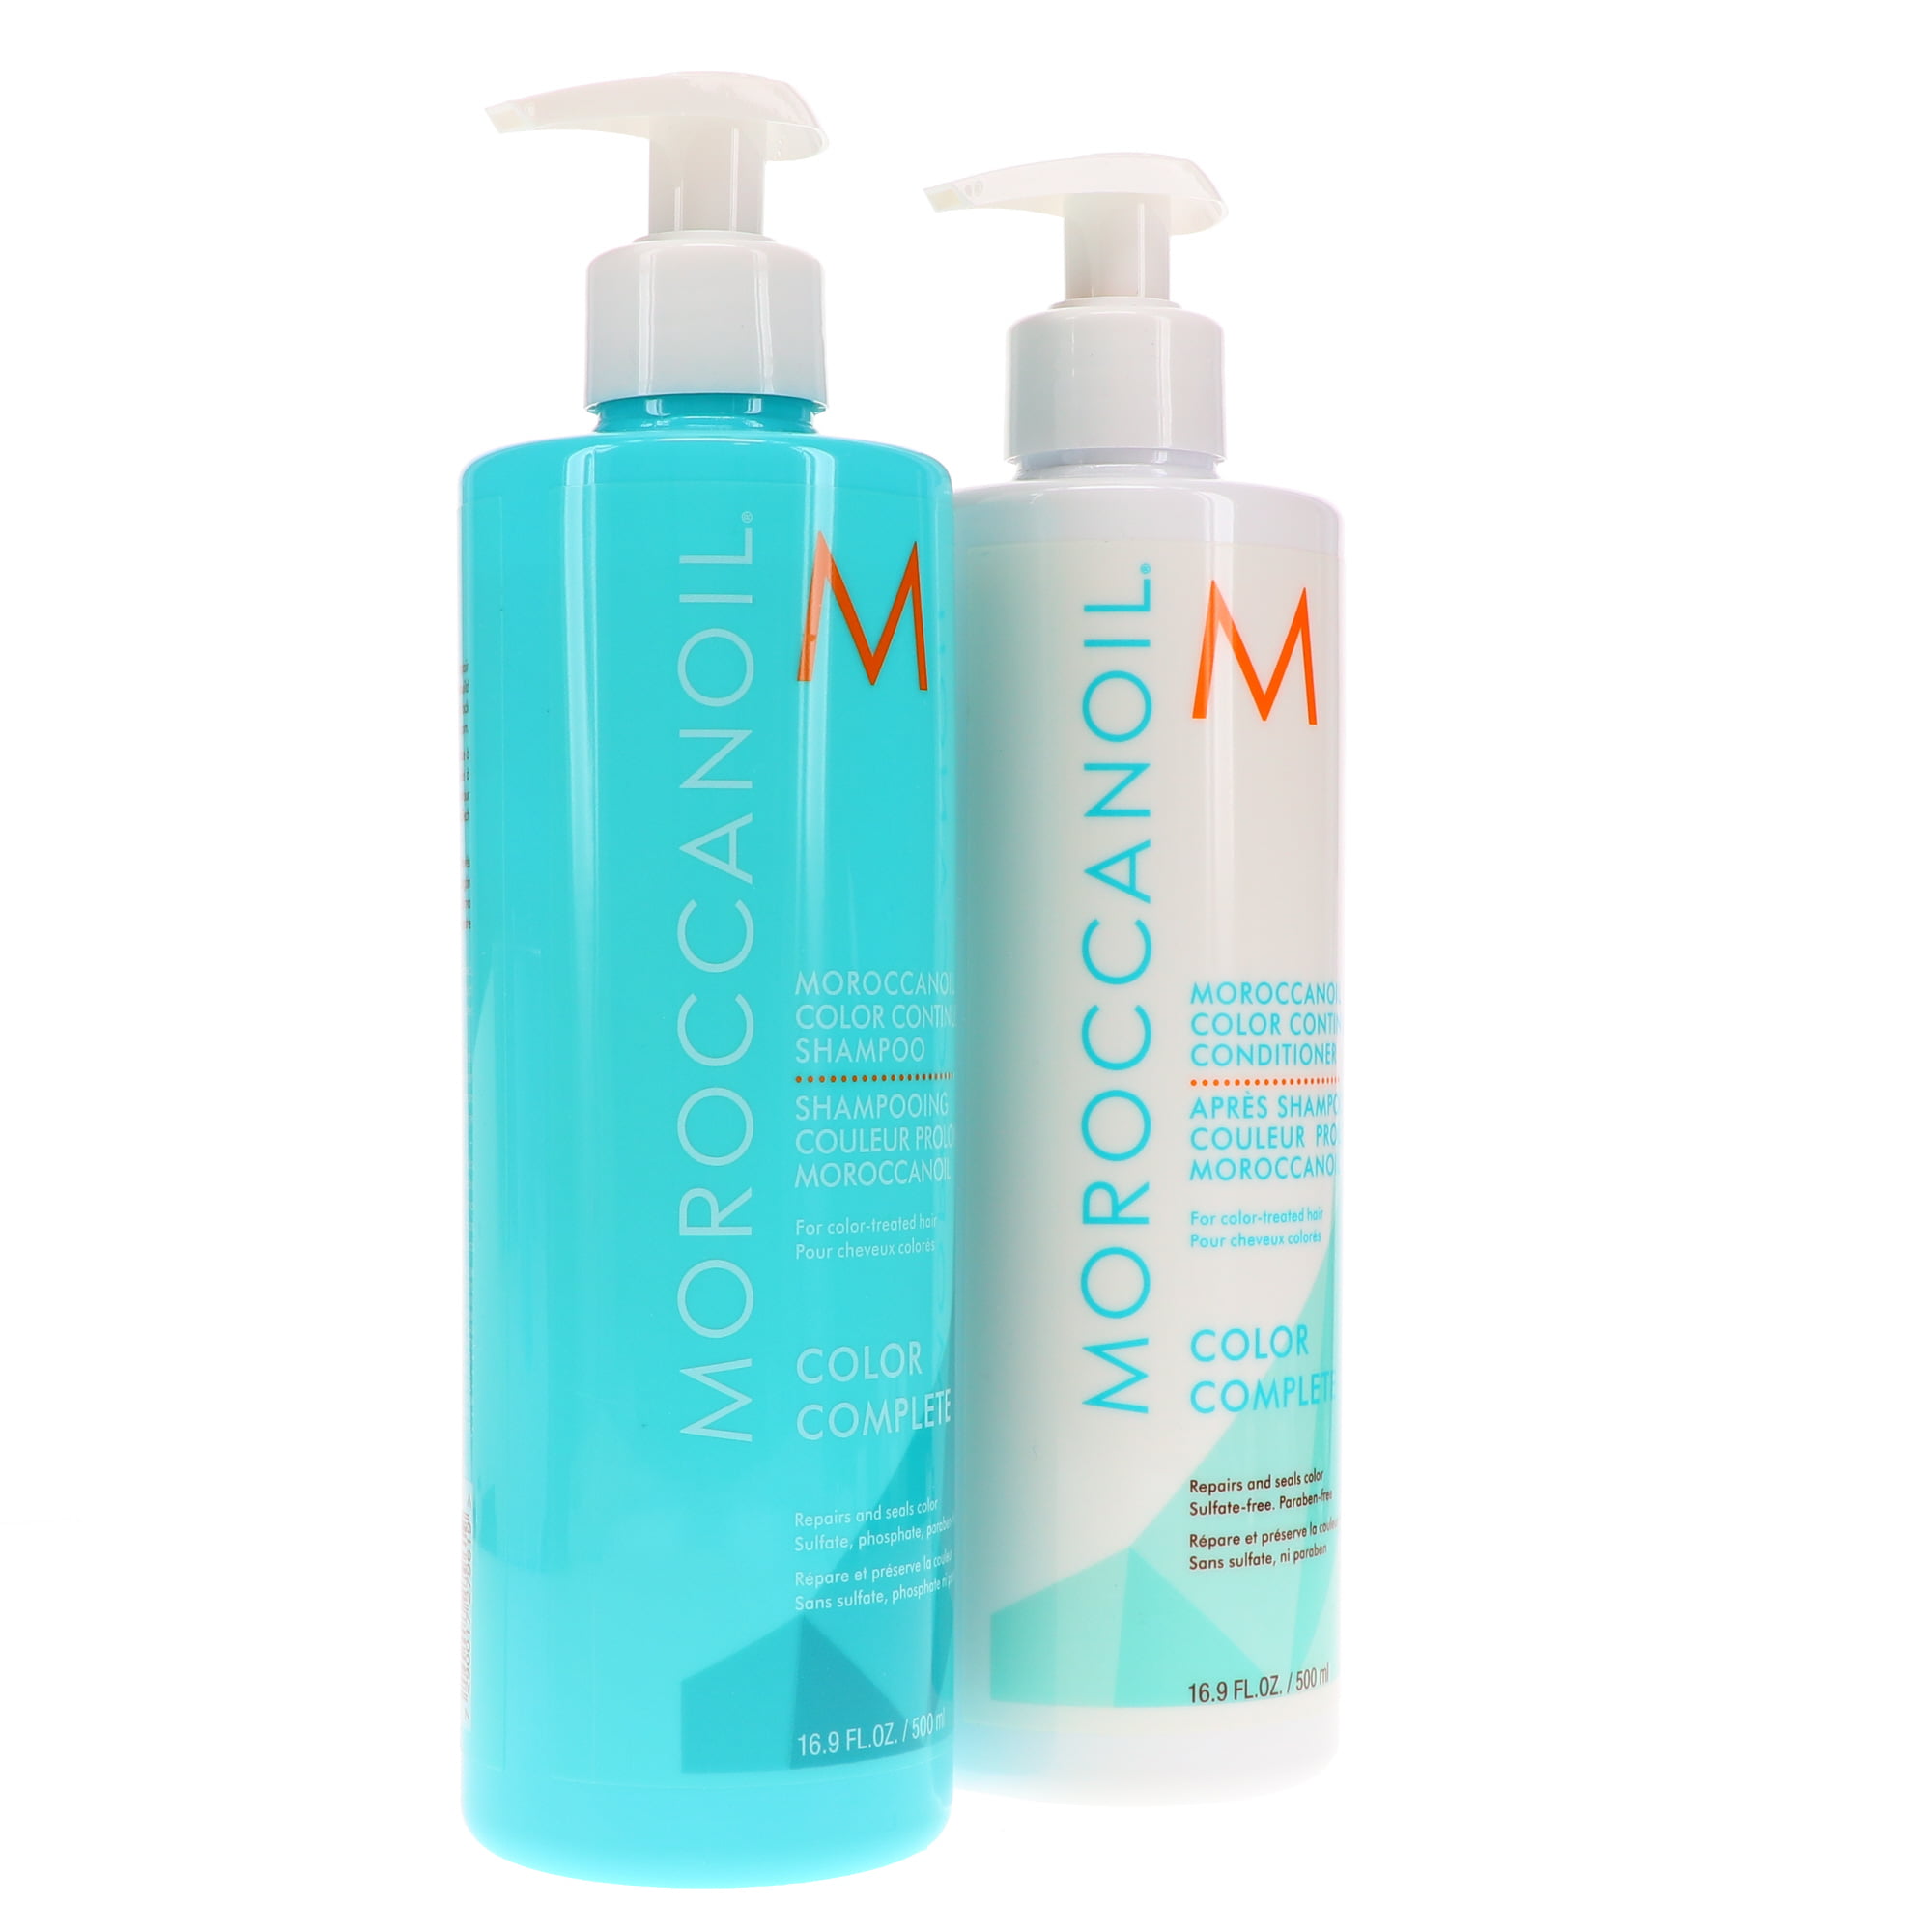 Moroccanoil Color Continue Shampoo and Conditioner 16.9 oz Combo 